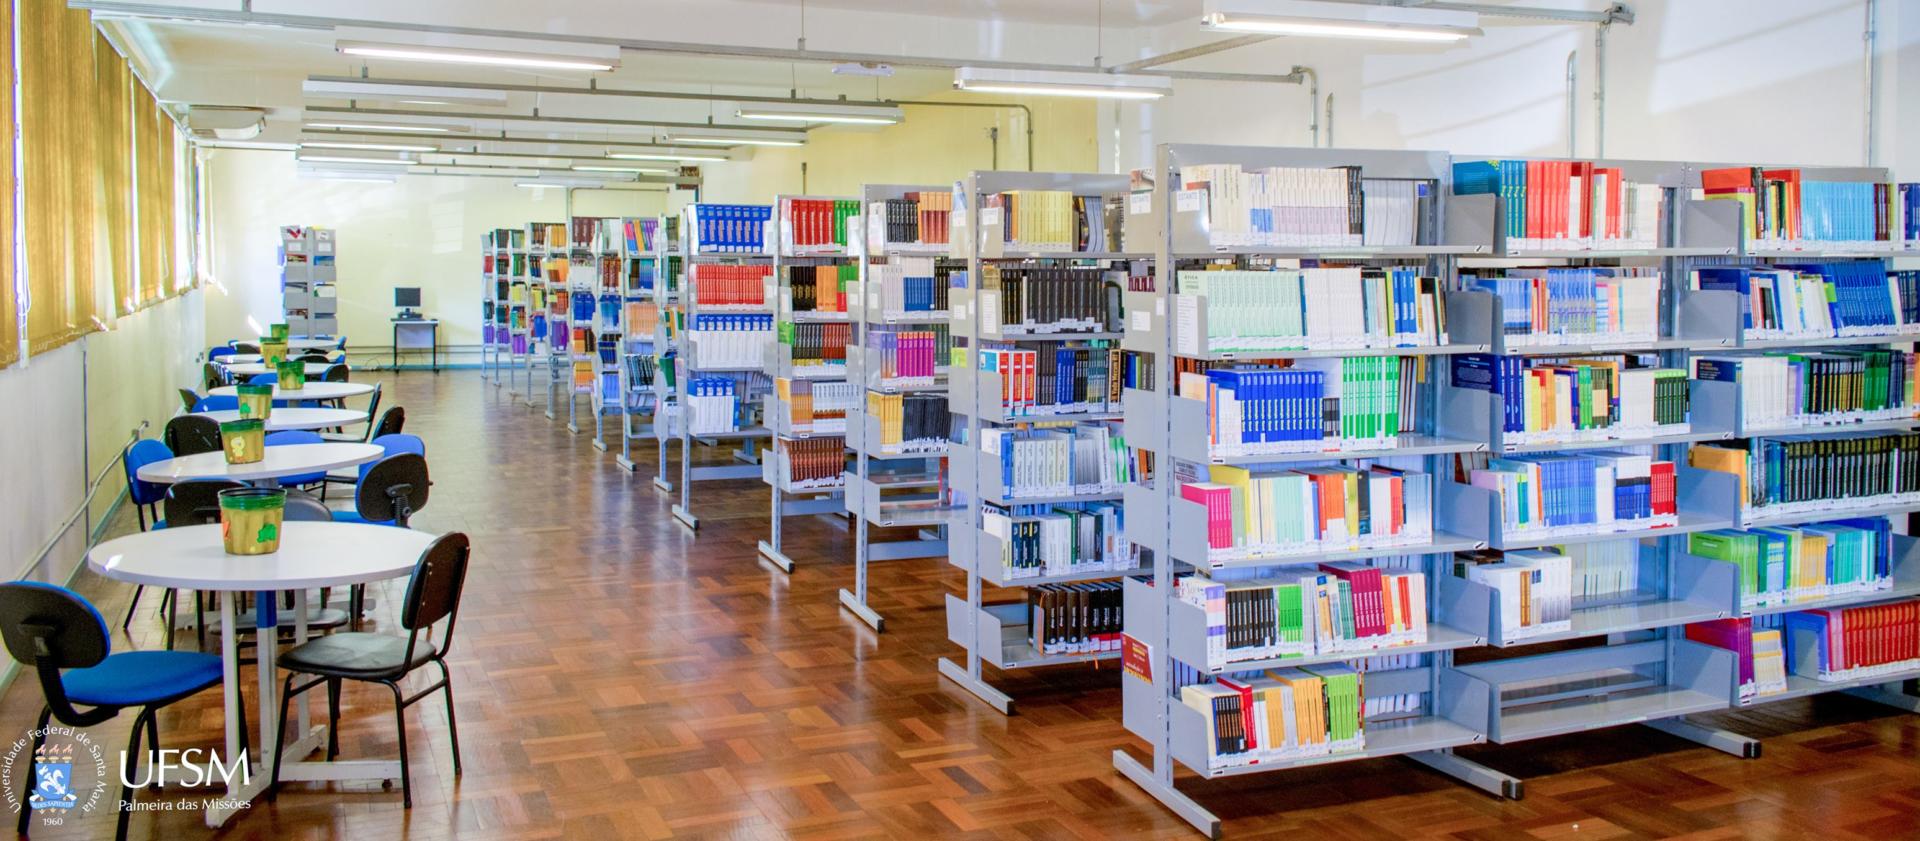 Foto de Biblioteca ampla com diversos armários de livros e mesas para estudo